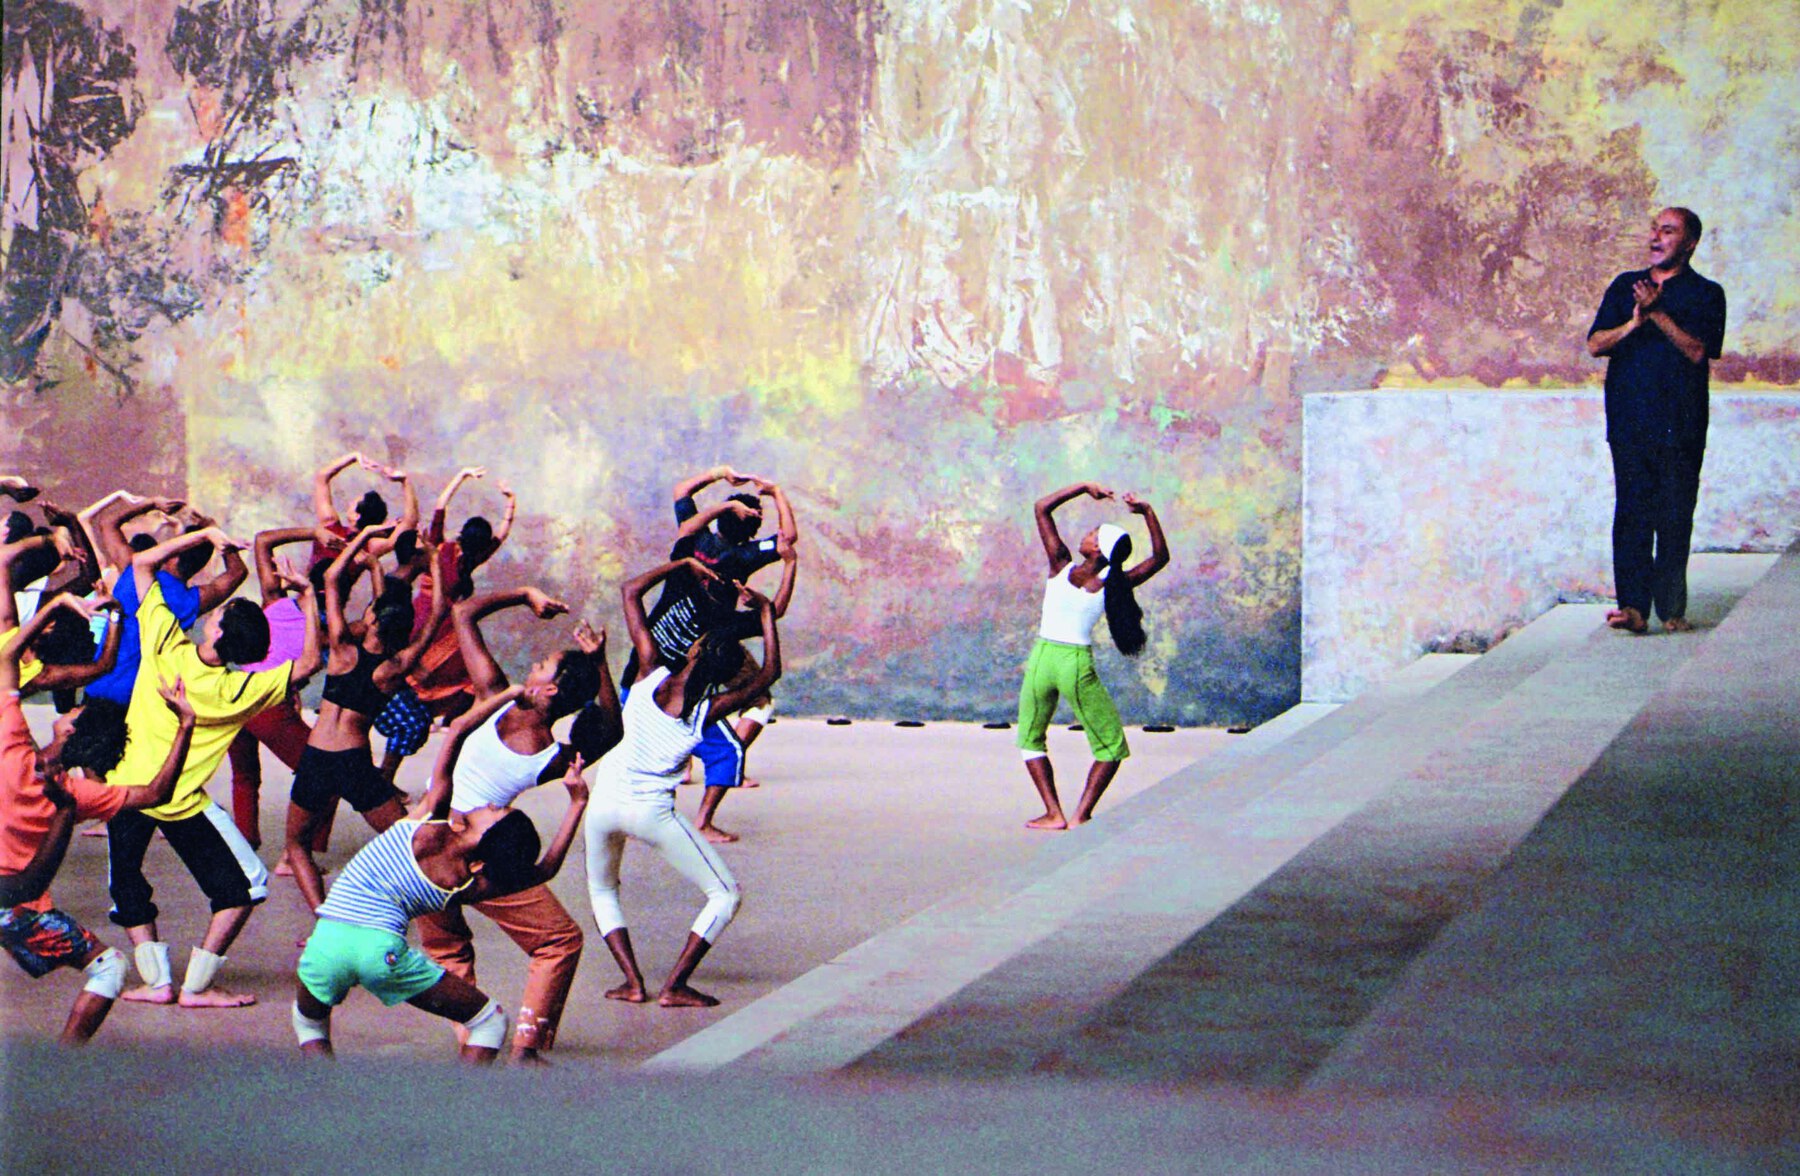 Fotografia. Grupo de dança realizando movimentos com joelhos flexionados e mãos formando arco acima da cabeça. Estão em um salão amplo e fechado, orientados por um homem vestido de preto que está à direita, sobre degraus altos cinza.